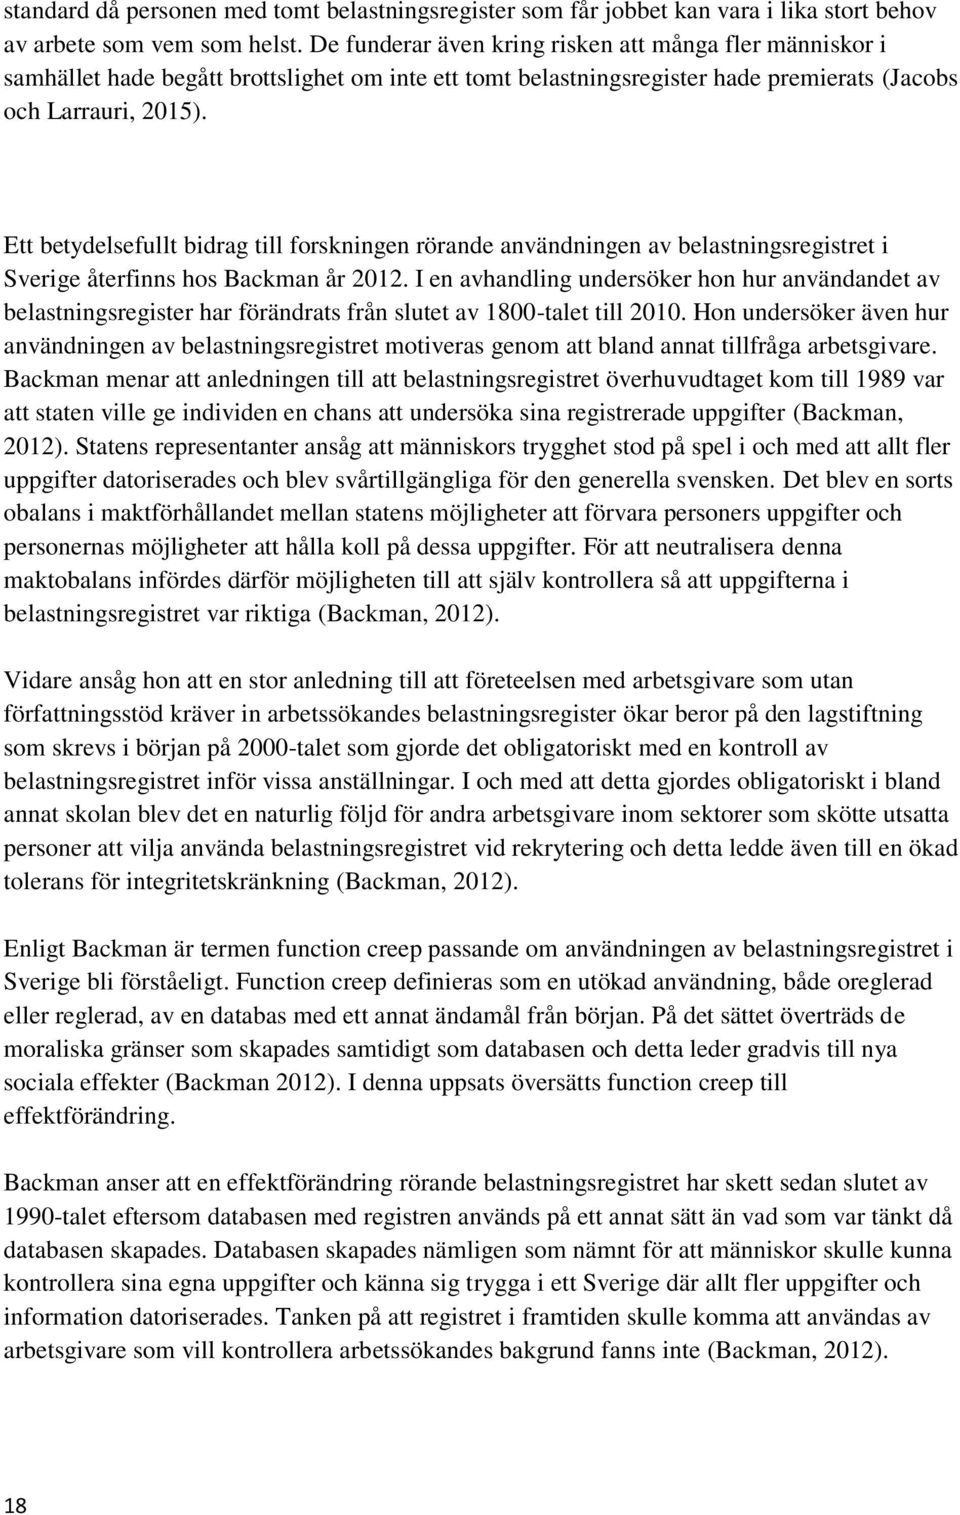 Ett betydelsefullt bidrag till forskningen rörande användningen av belastningsregistret i Sverige återfinns hos Backman år 2012.